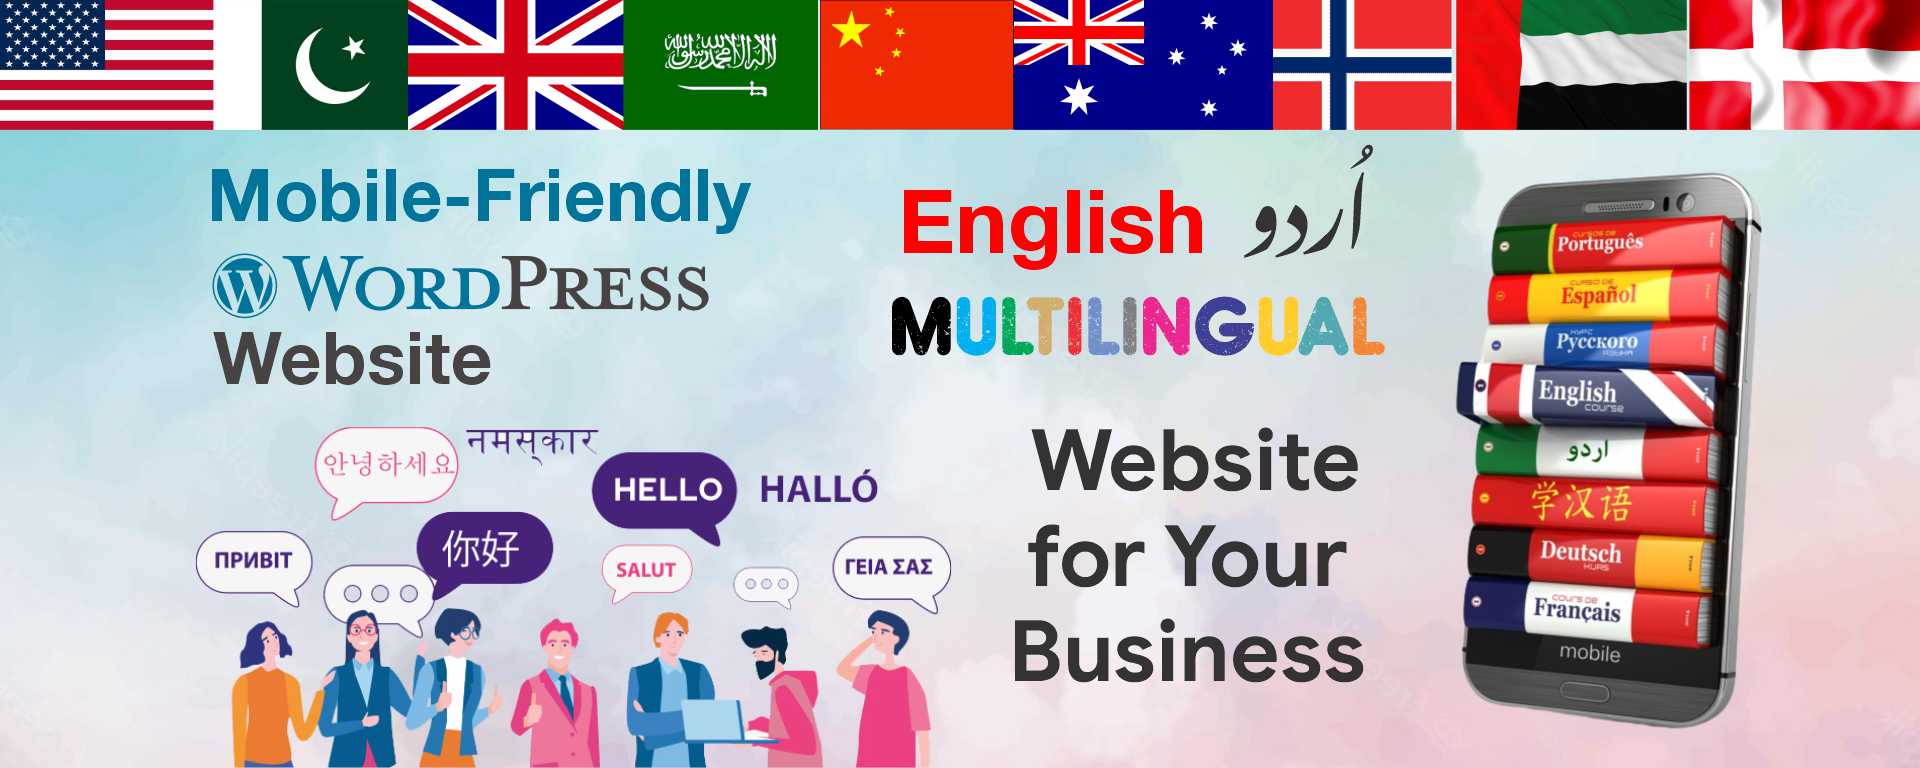 Multilingual Website Slides